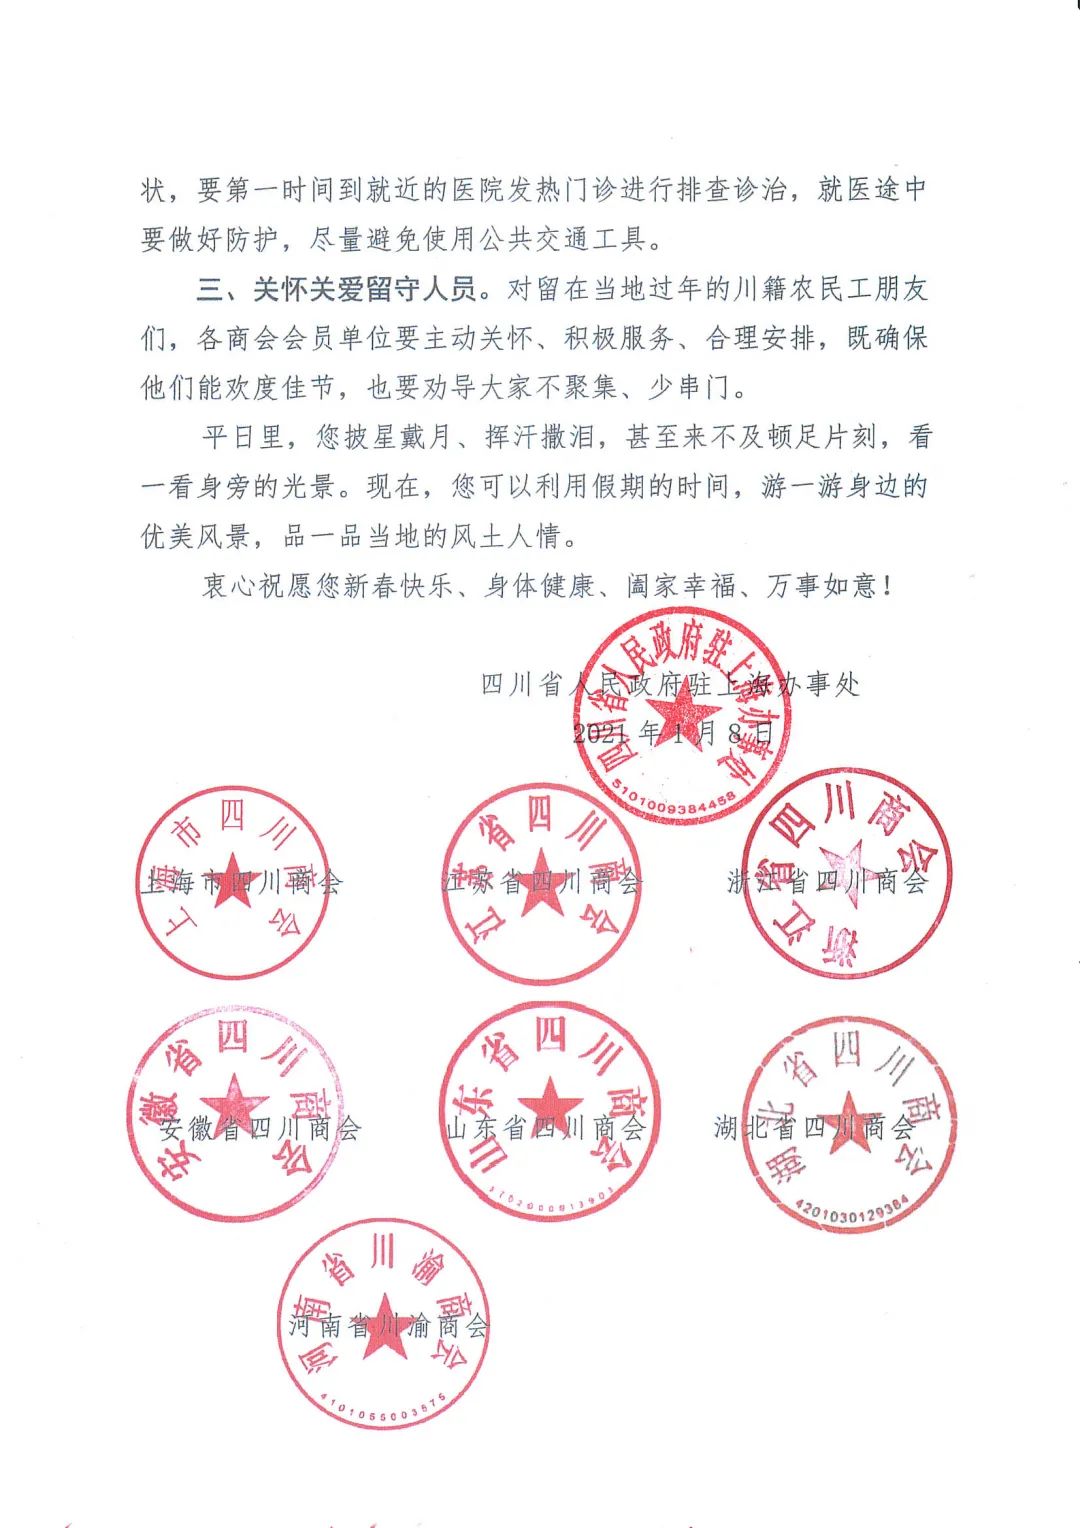 【倡议书】四川省人民政府驻上海办事处、泛长三角四川商会联盟疫情防控倡议书